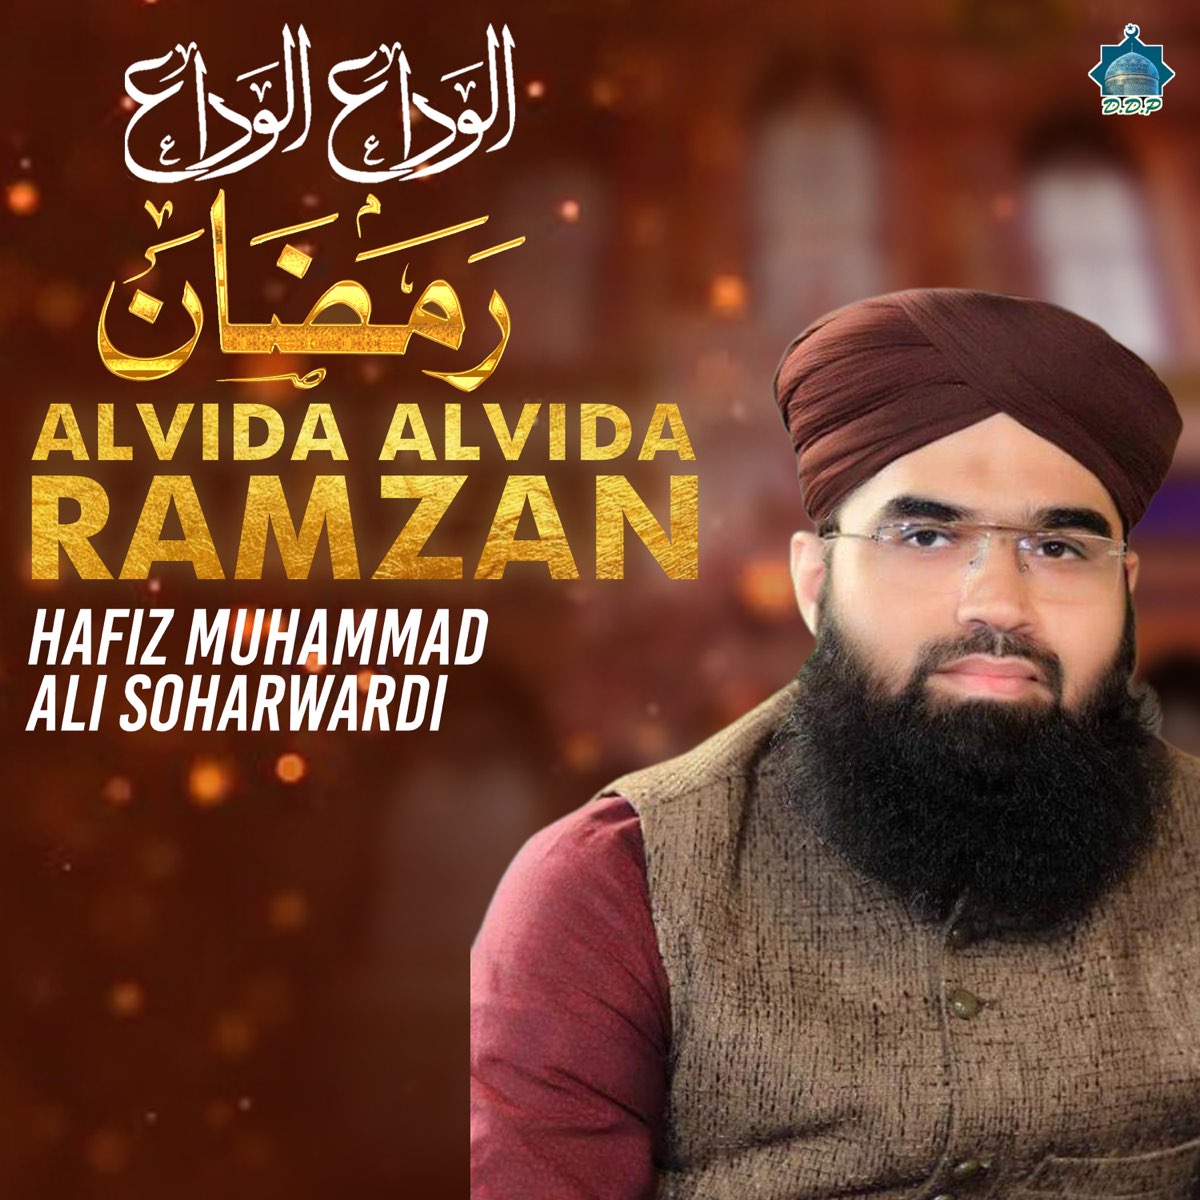 Alvida Alvida Ramzan by Hafiz Muhammad Ali Soharwardi on Apple Music